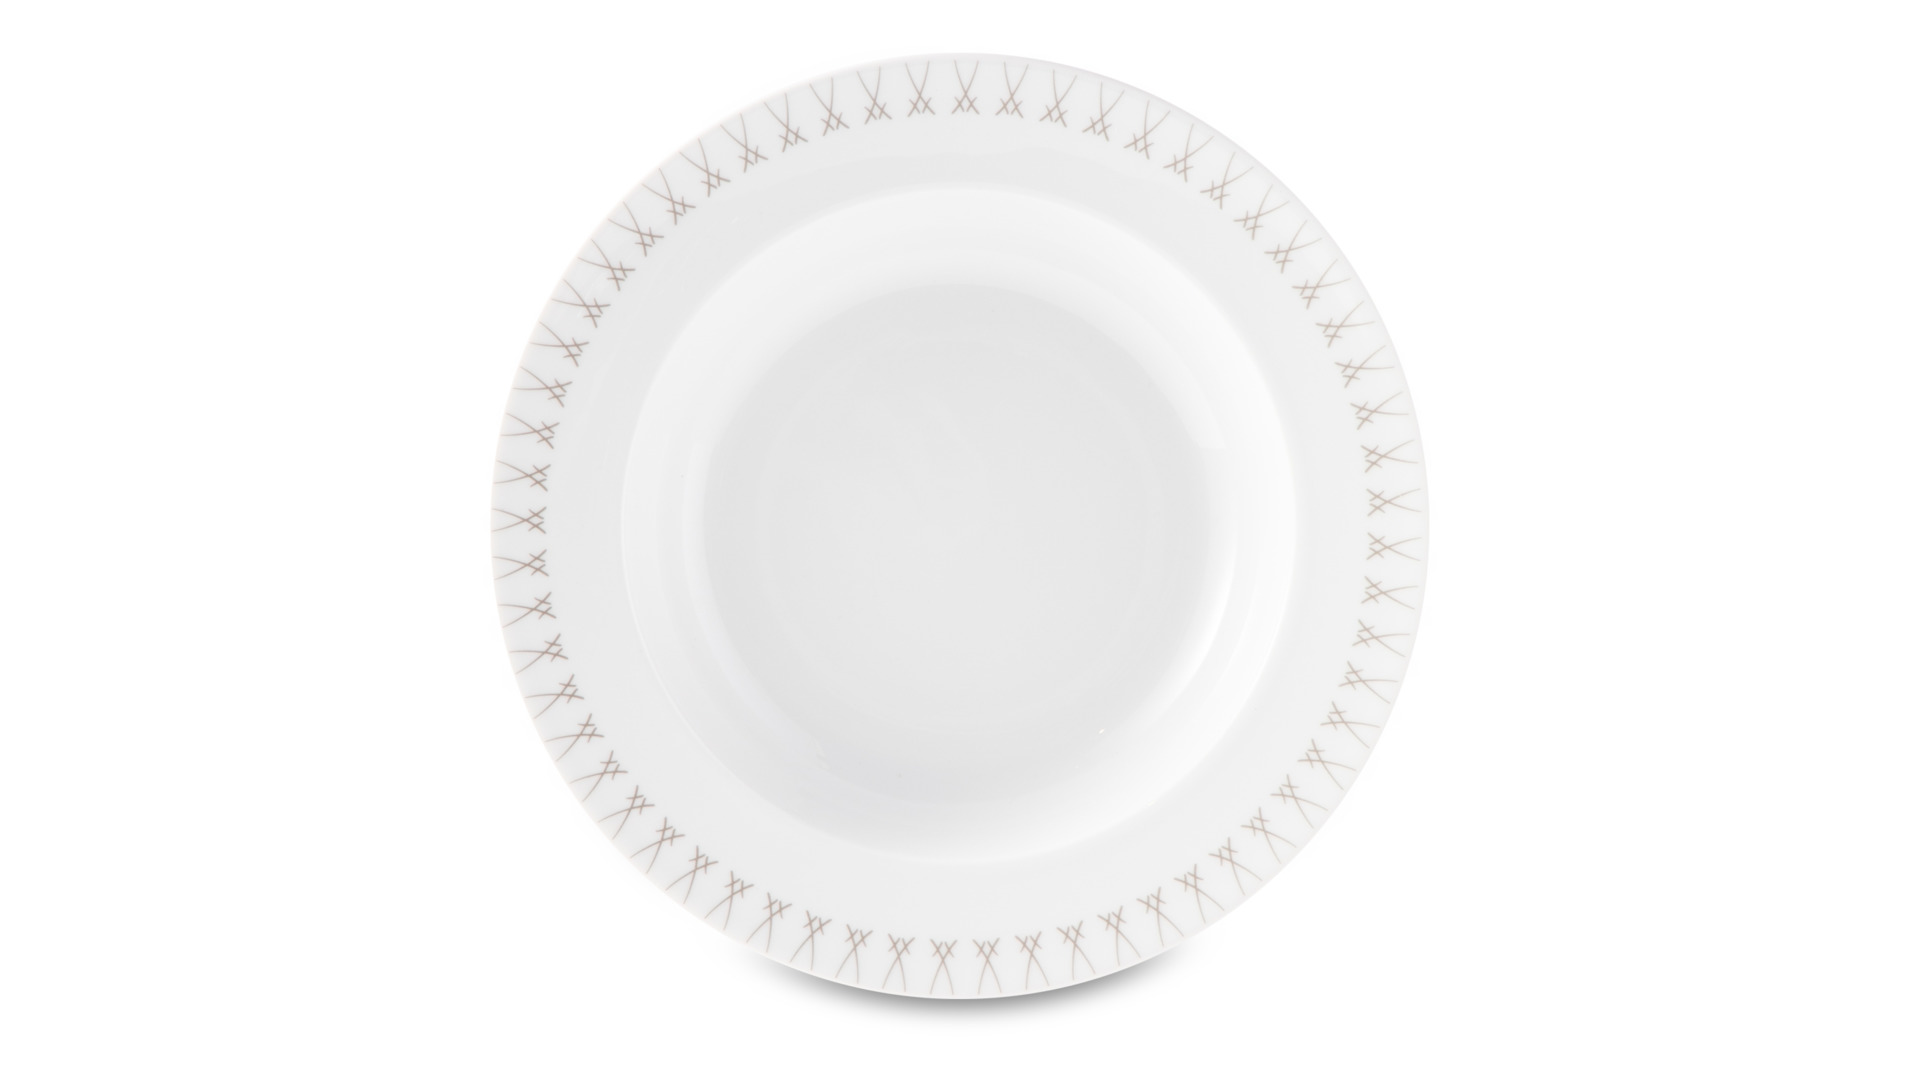 Тарелка суповая Meissen Мечи Лаконичный серый 26 см, фарфор